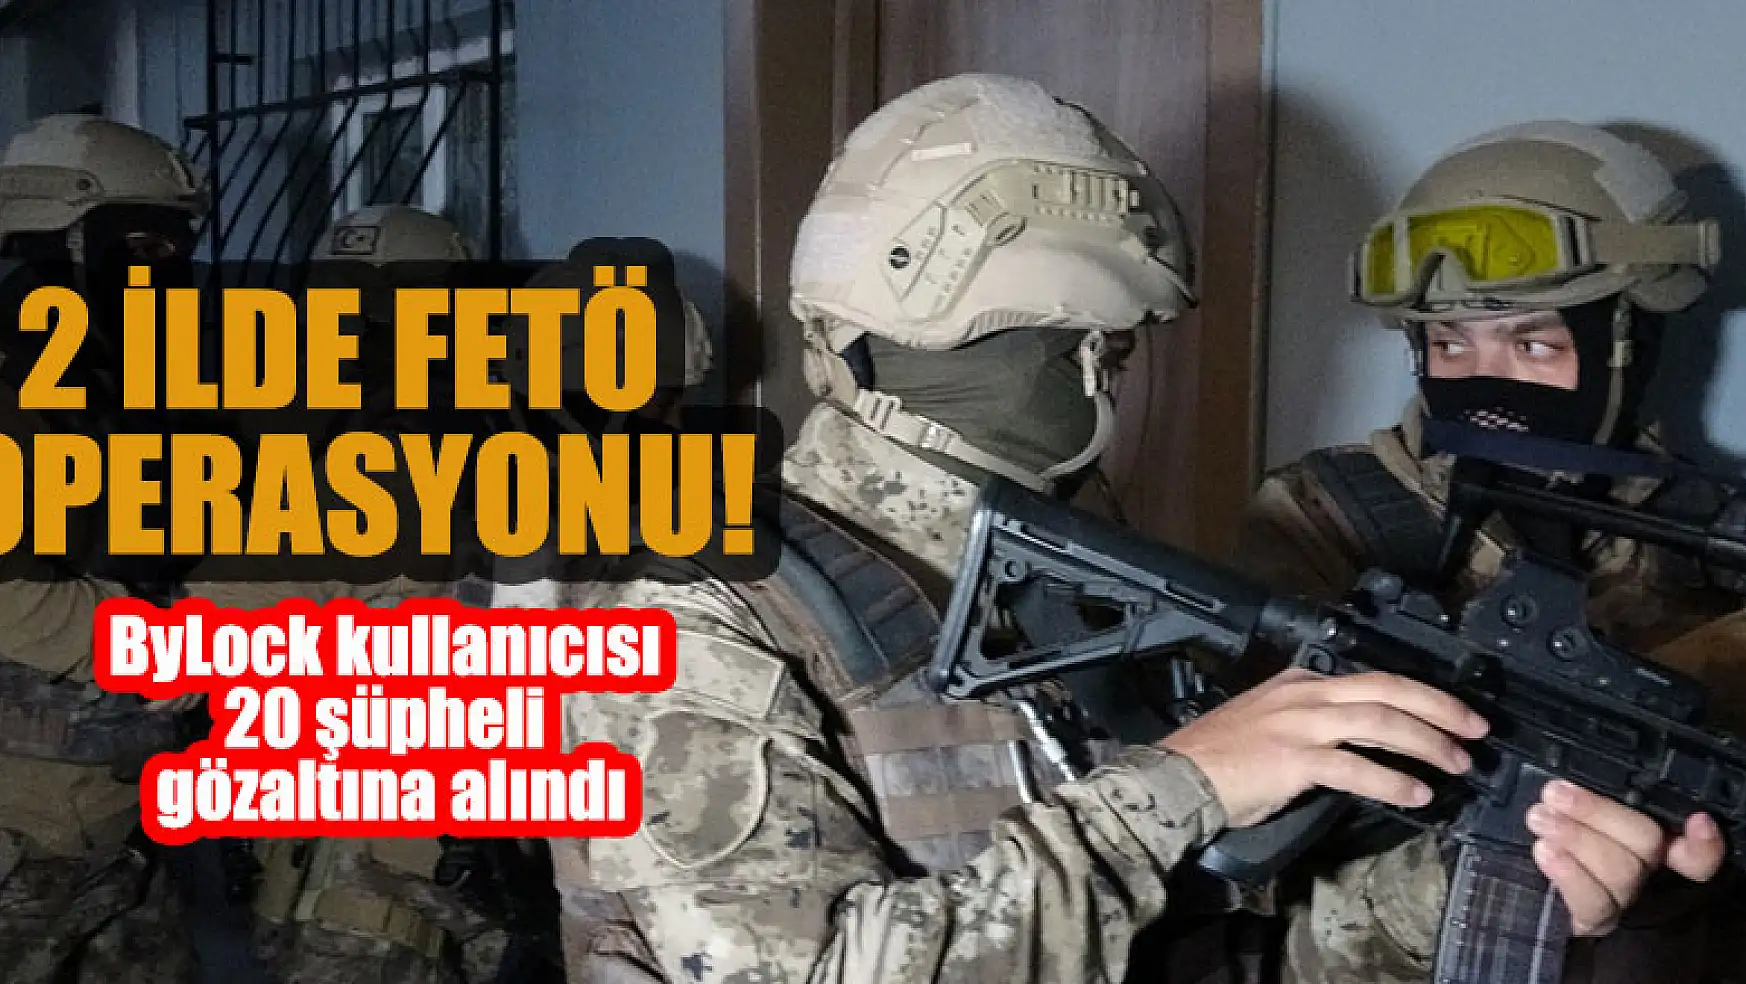 2 ilde FETÖ operasyonu: ByLock kullanıcısı 20 şüpheli gözaltına alındı